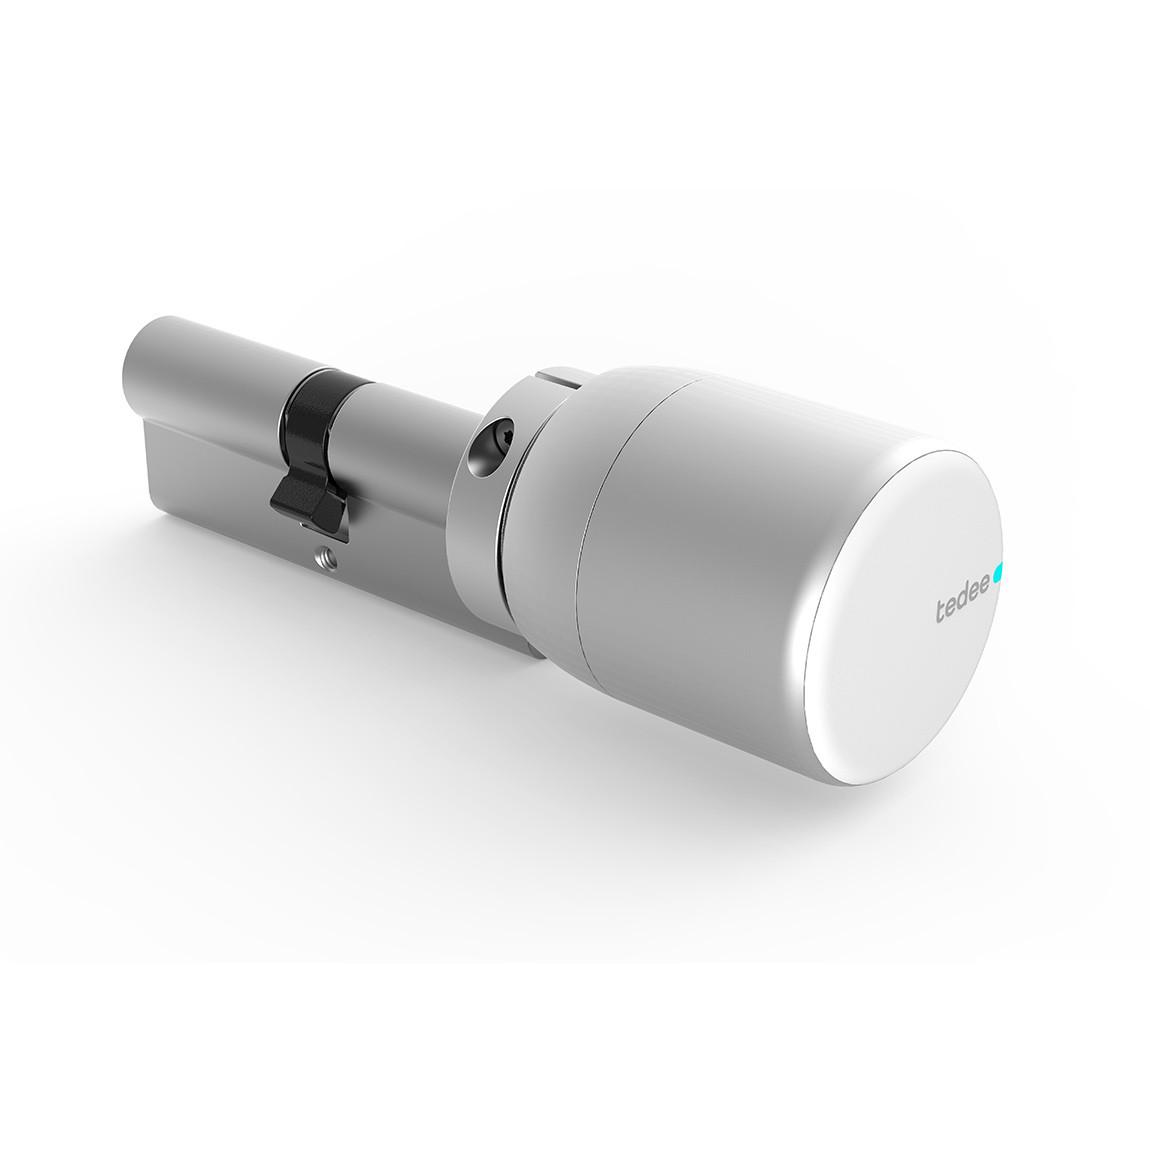 tedee/GERDA Adapter für vorhandene Zylinder mit Smart Lock komplett